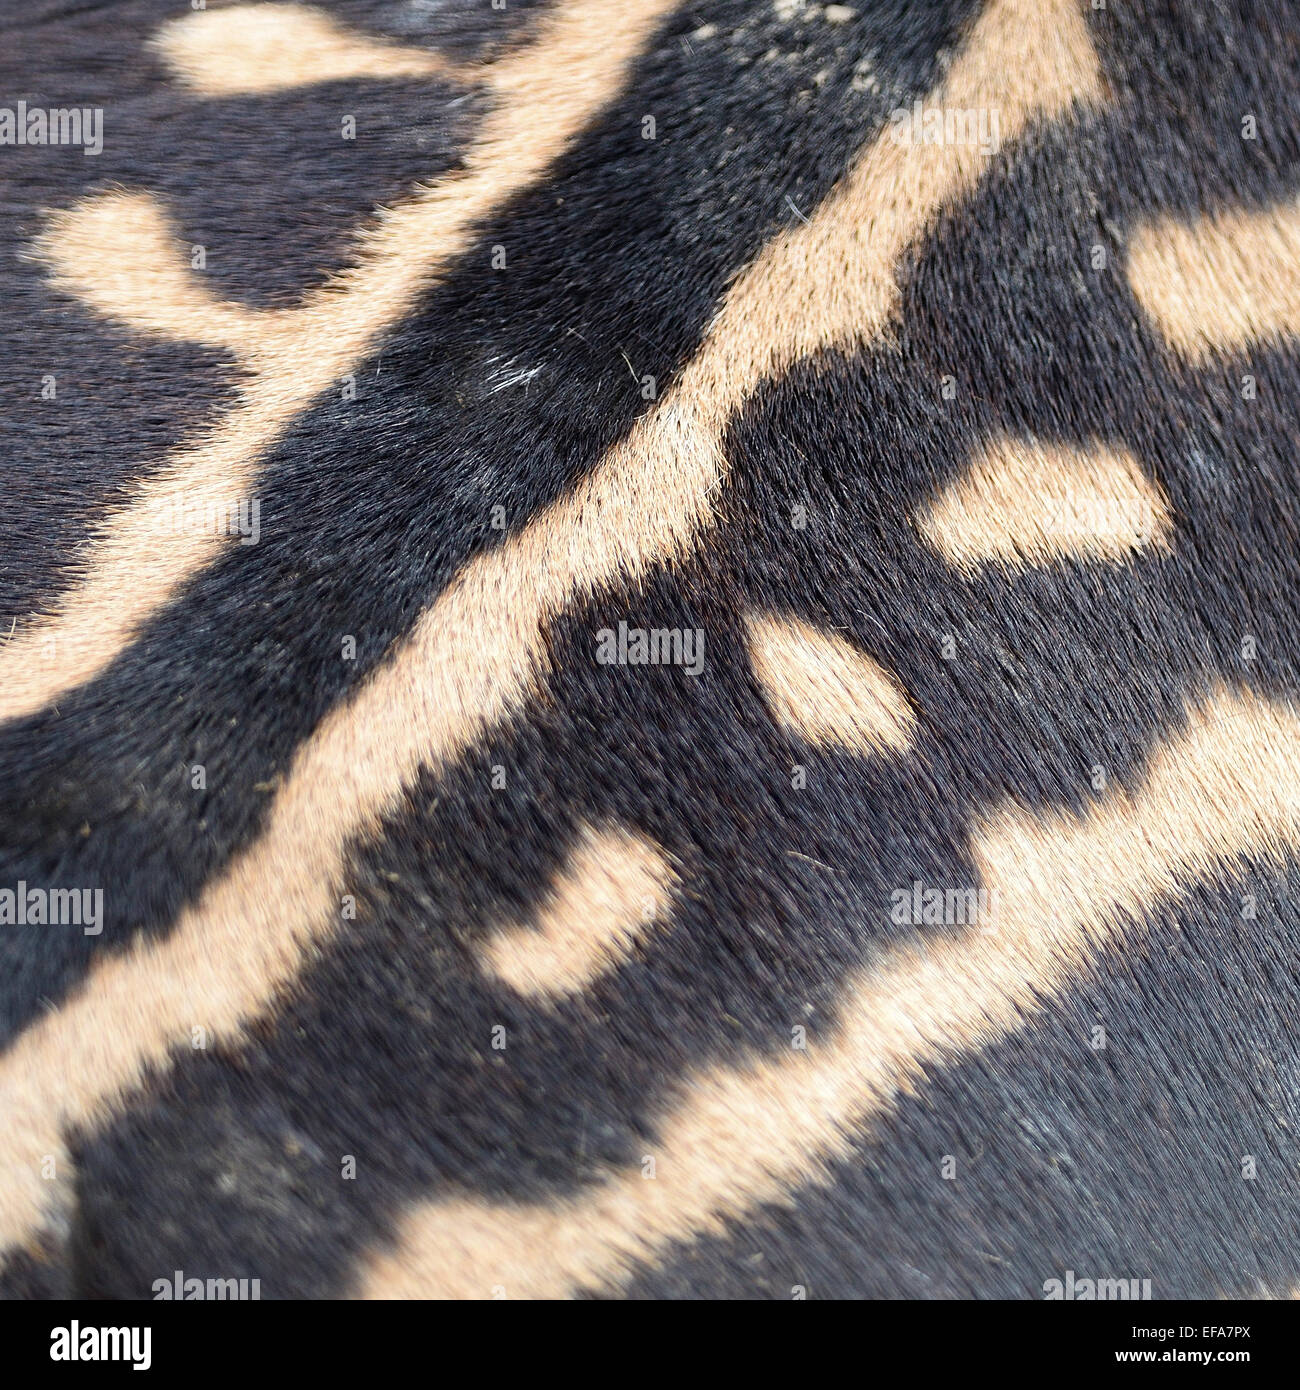 Pelle di animale, comune o Zebra Burchell's Zebra (Equus burchelli), striped texture di sfondo Foto Stock